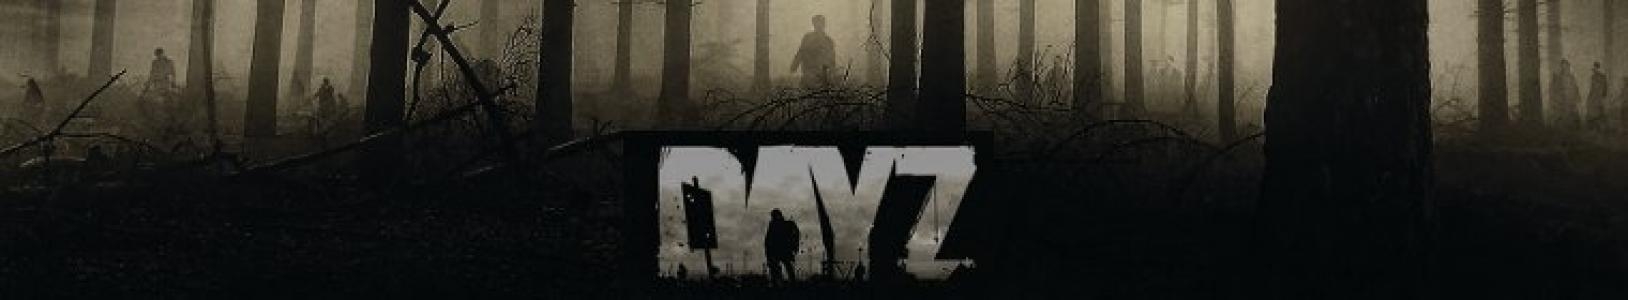 DayZ banner